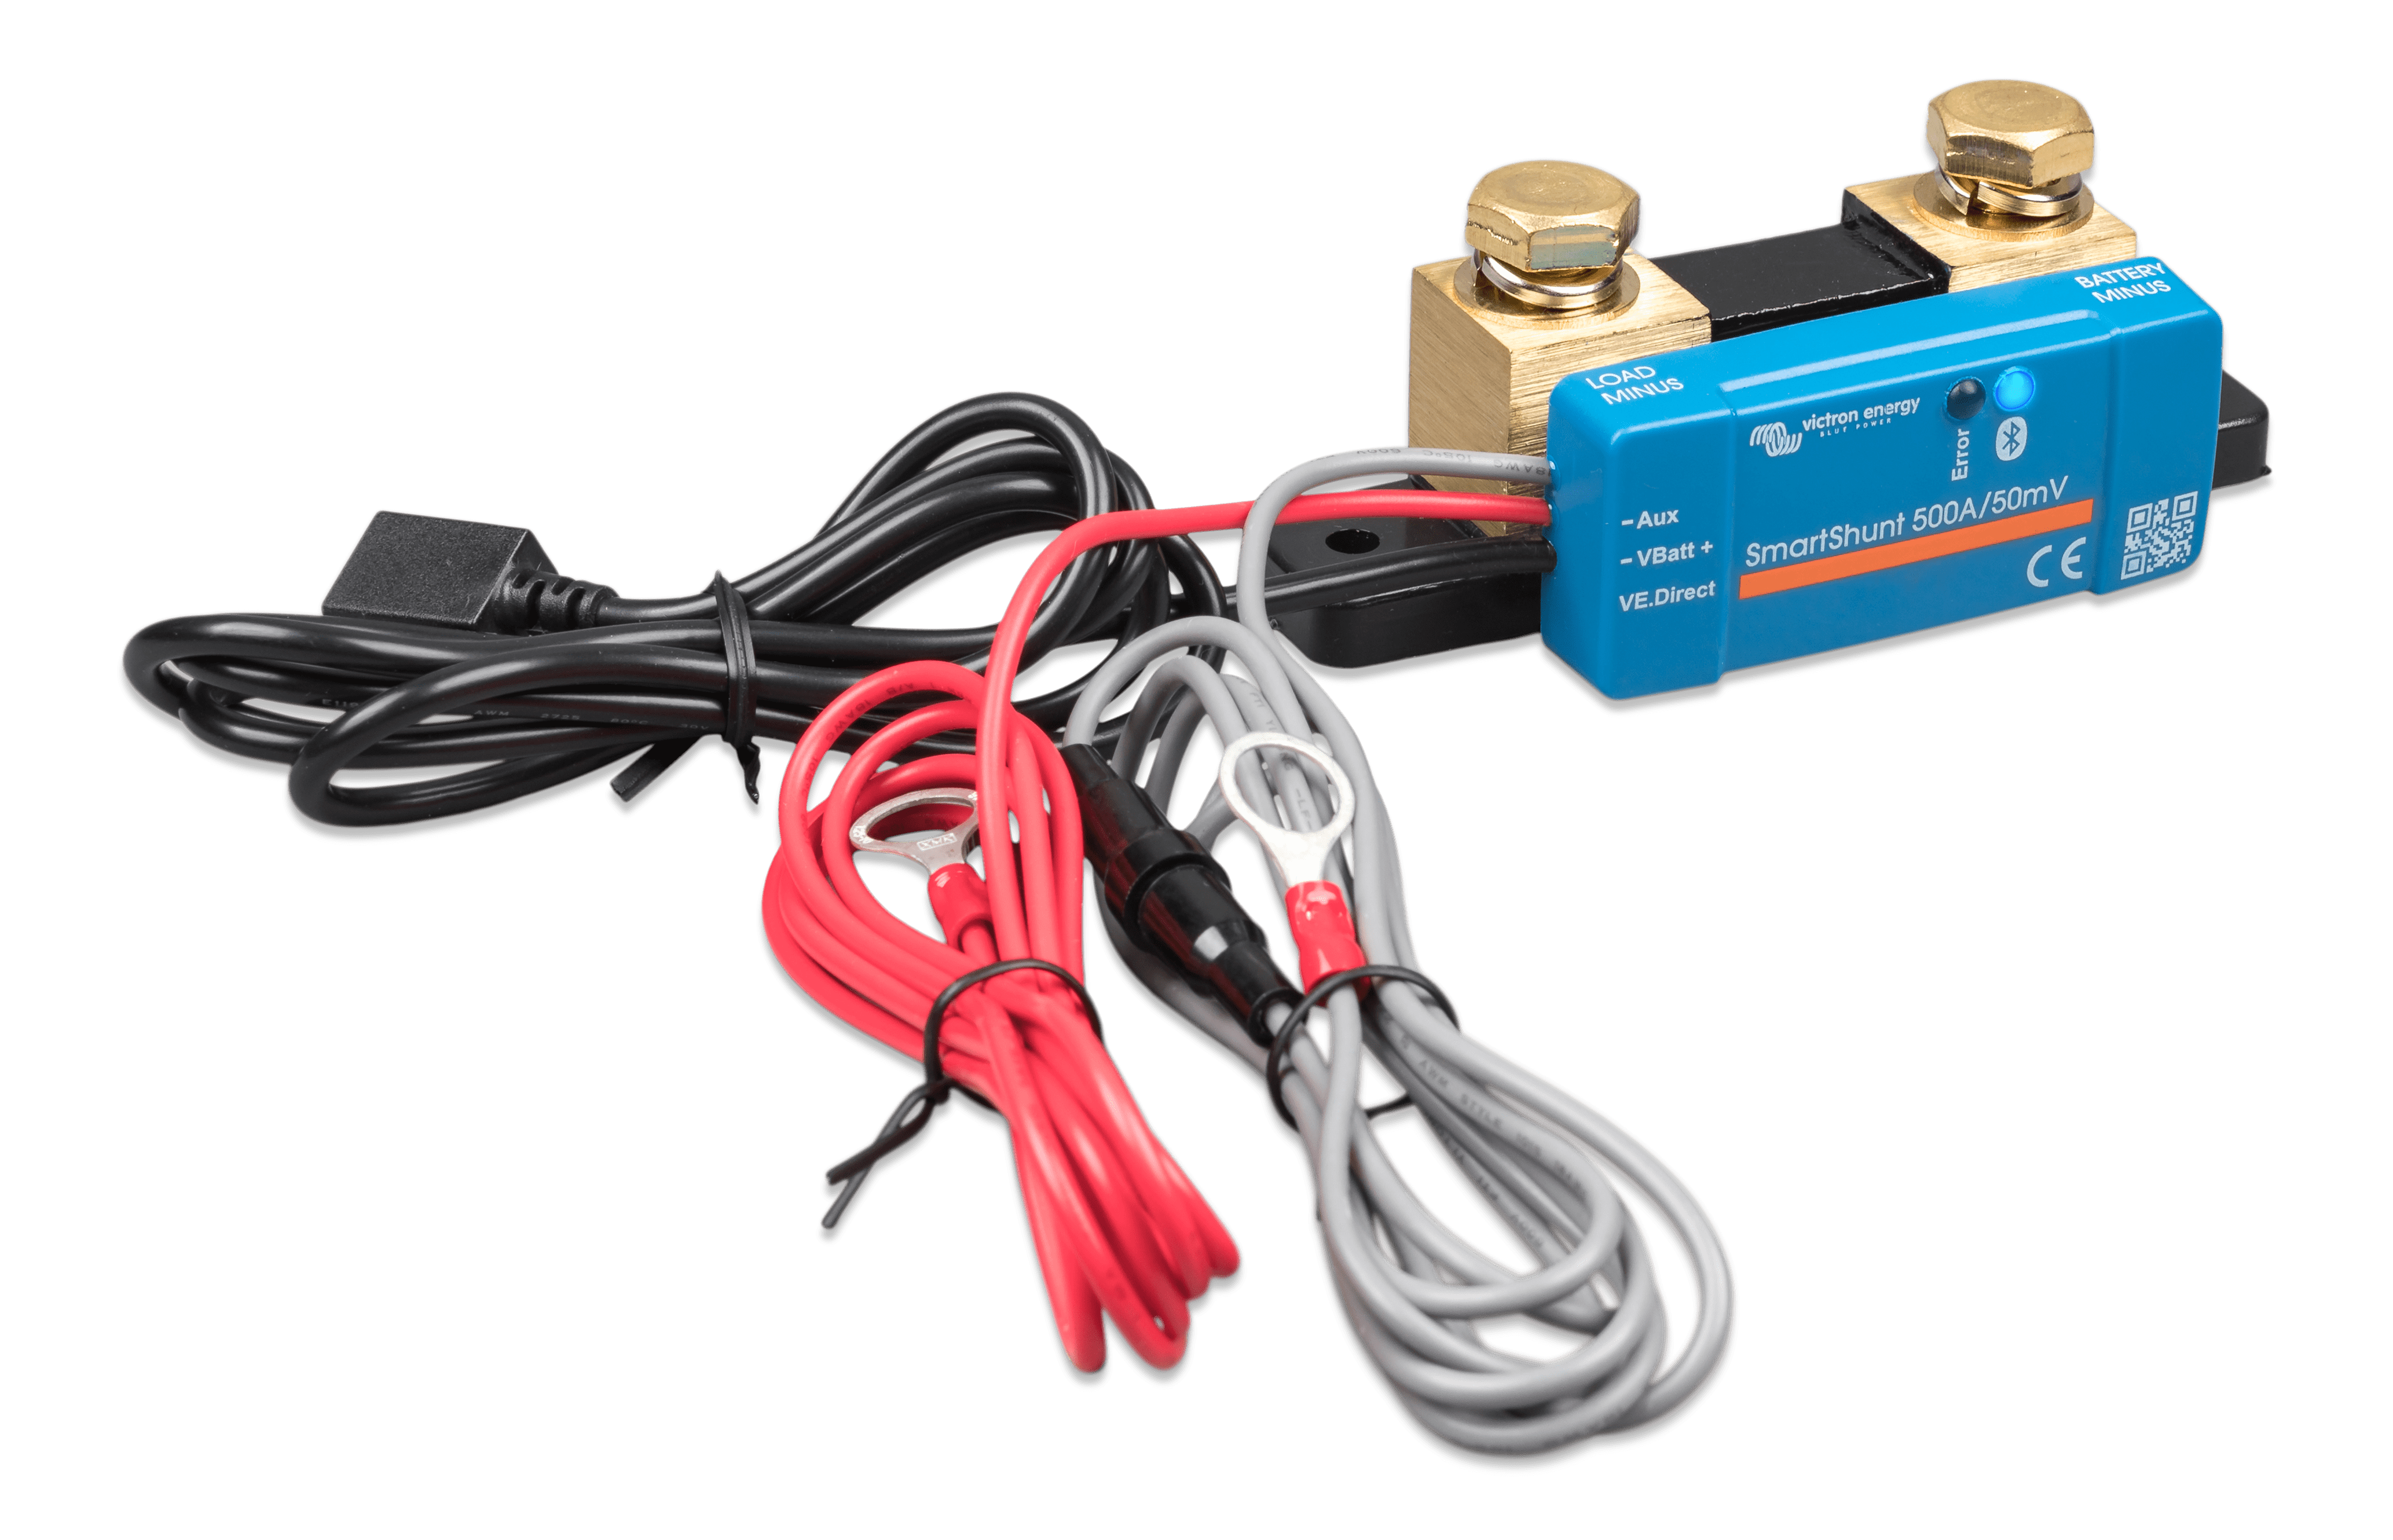 Monitor de baterías Victron Smartshunt 500A/50mV IP65 - SHU065150050 